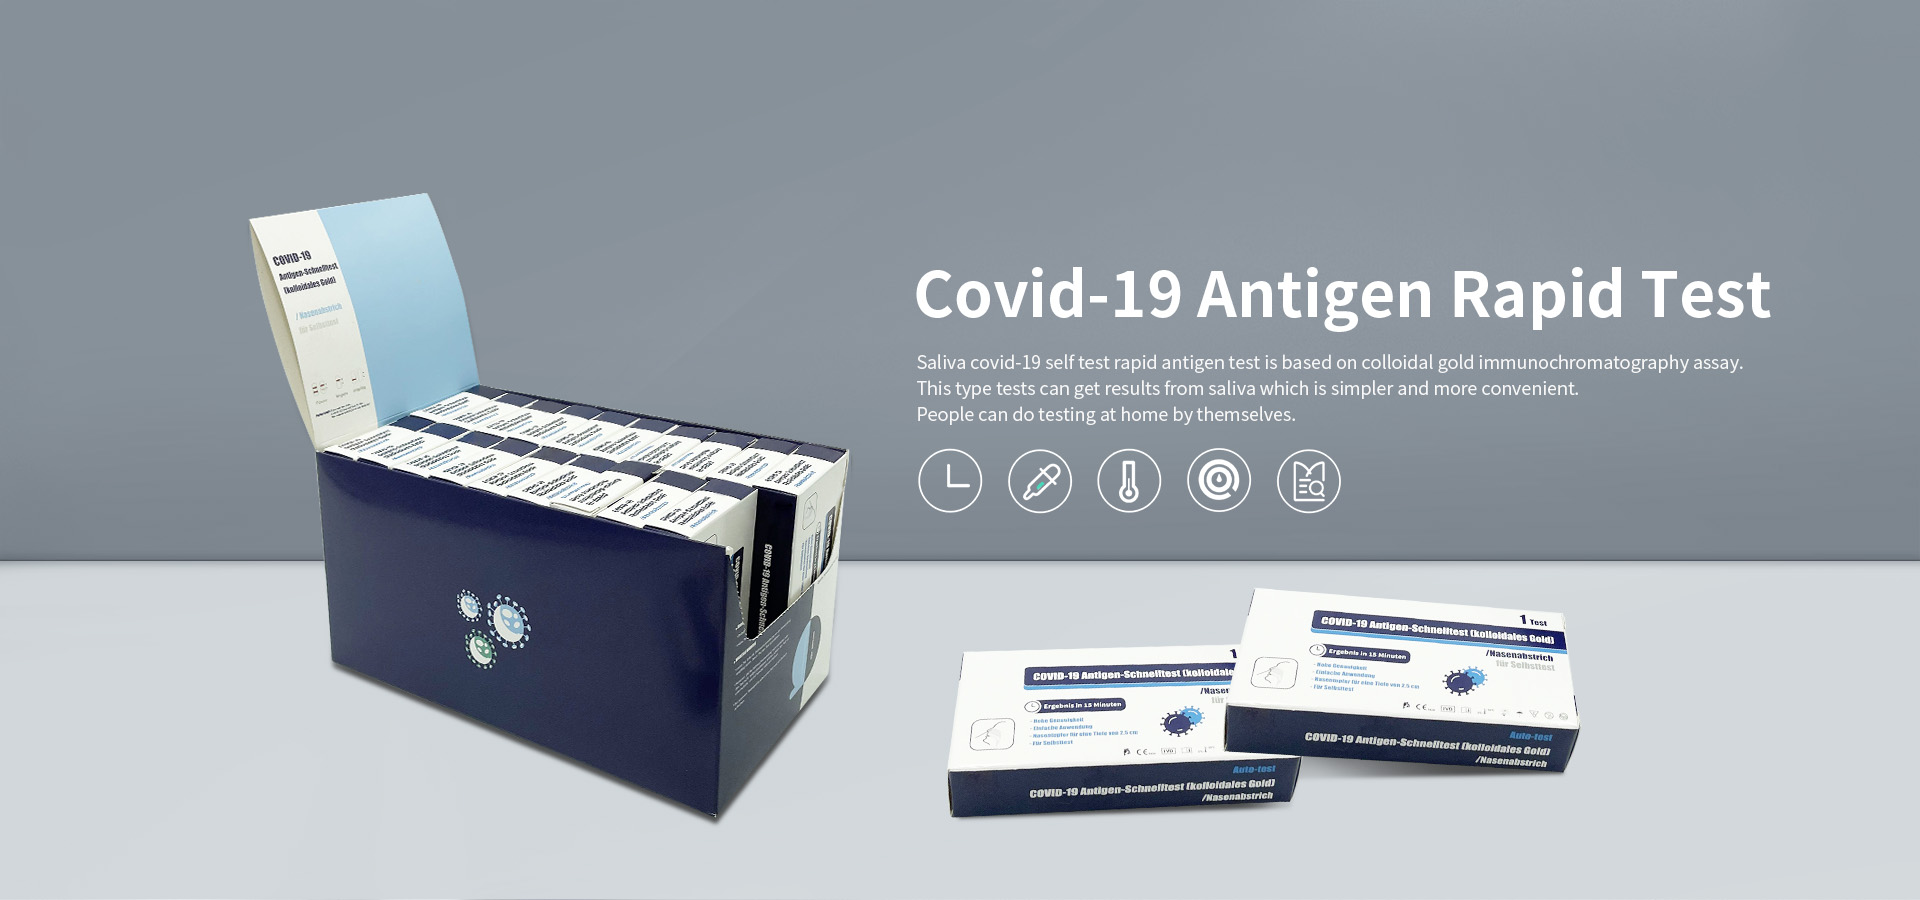 Kitajski proizvajalci hitrih antigenskih testov za samotestiranje Covid-19